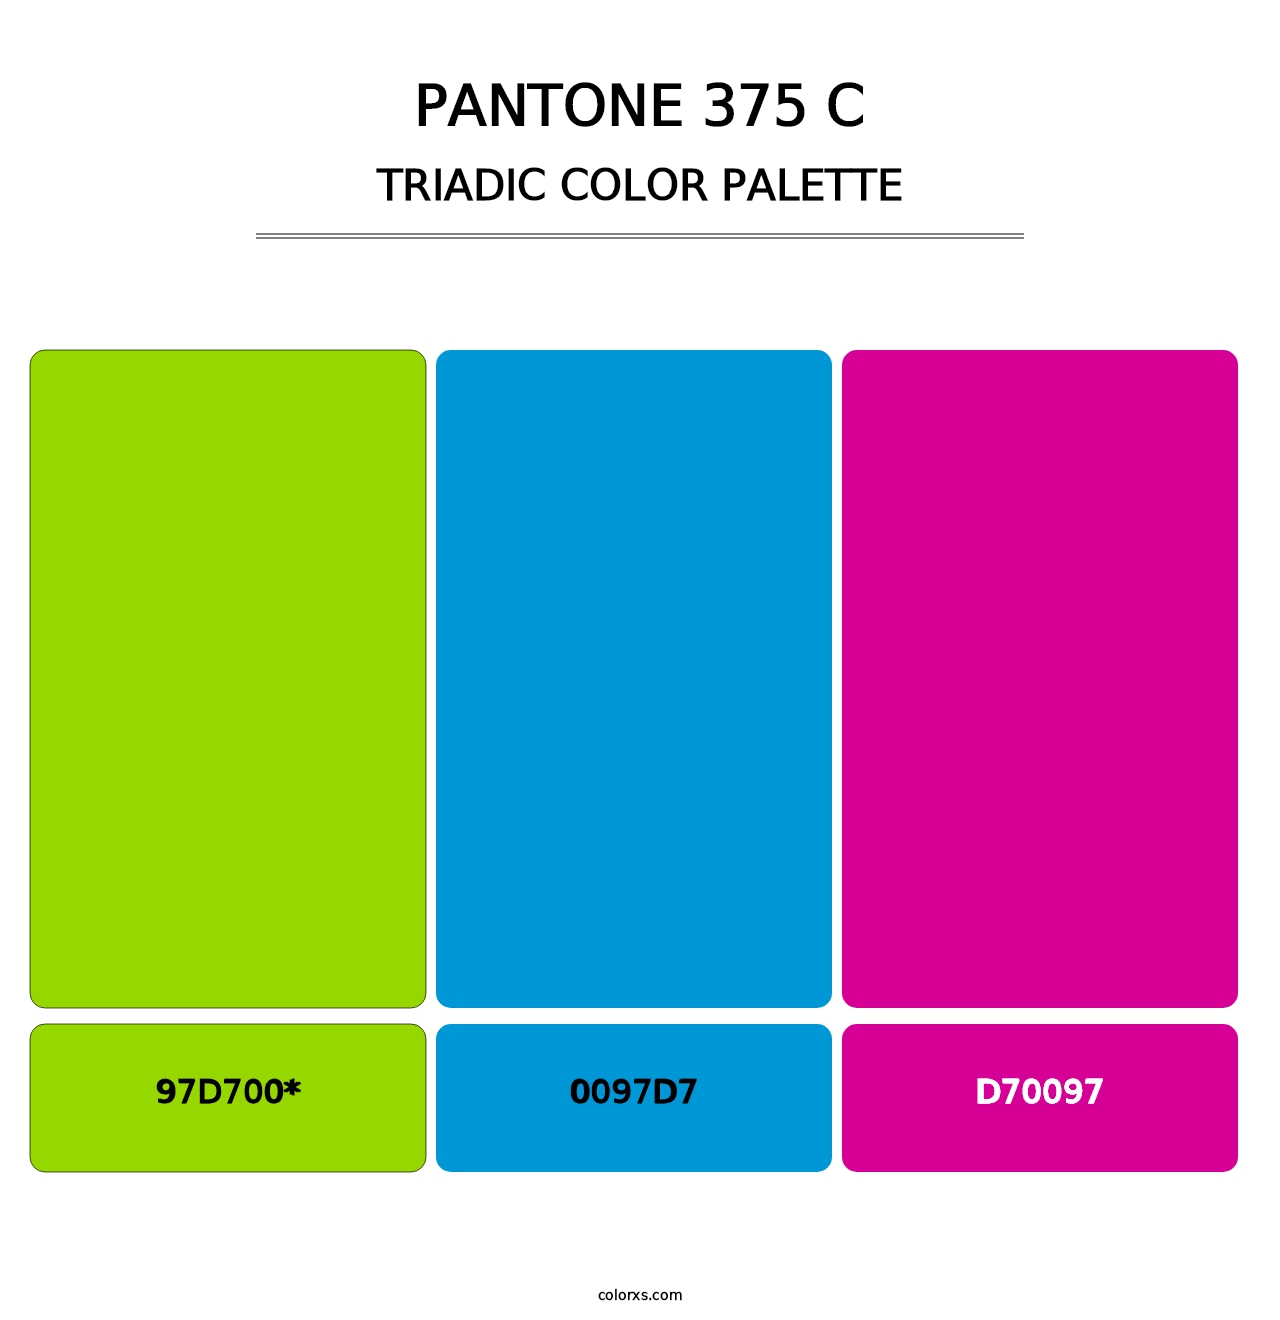 PANTONE 375 C - Triadic Color Palette